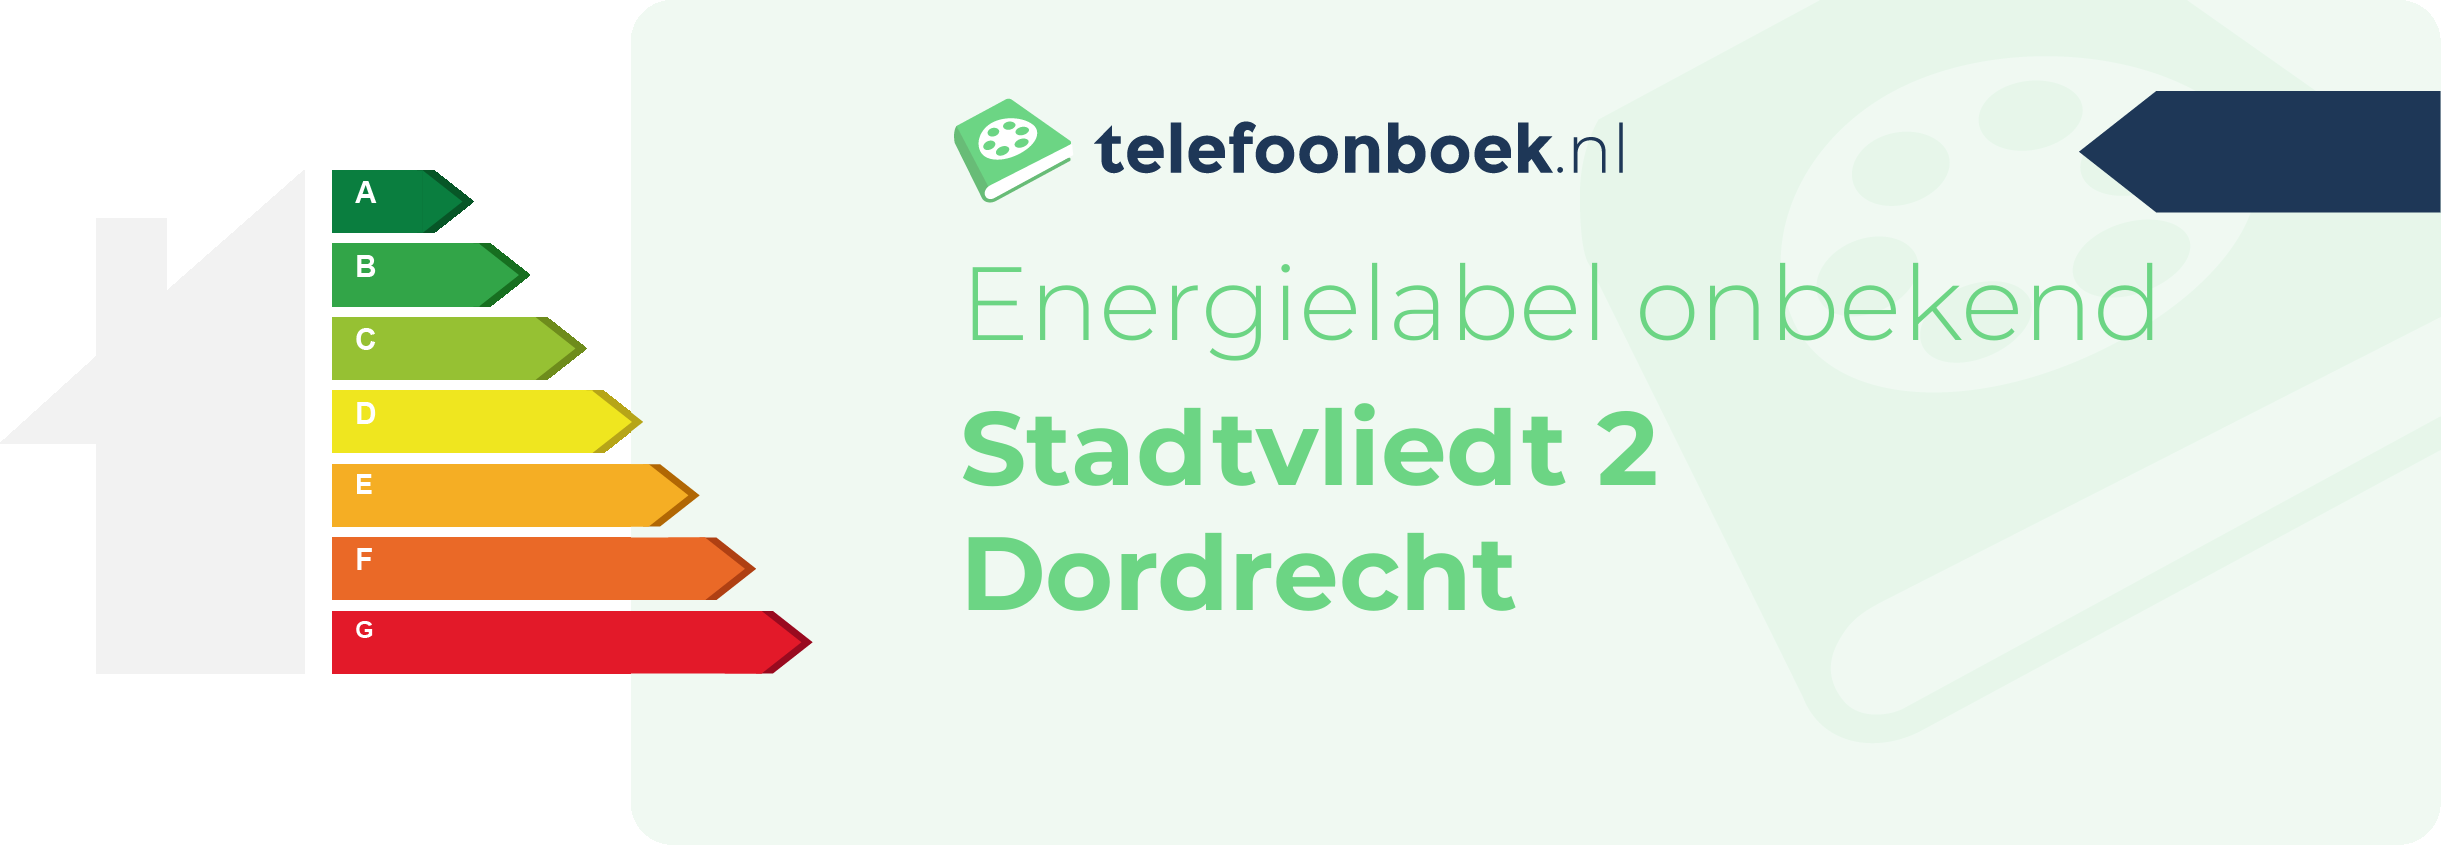 Energielabel Stadtvliedt 2 Dordrecht